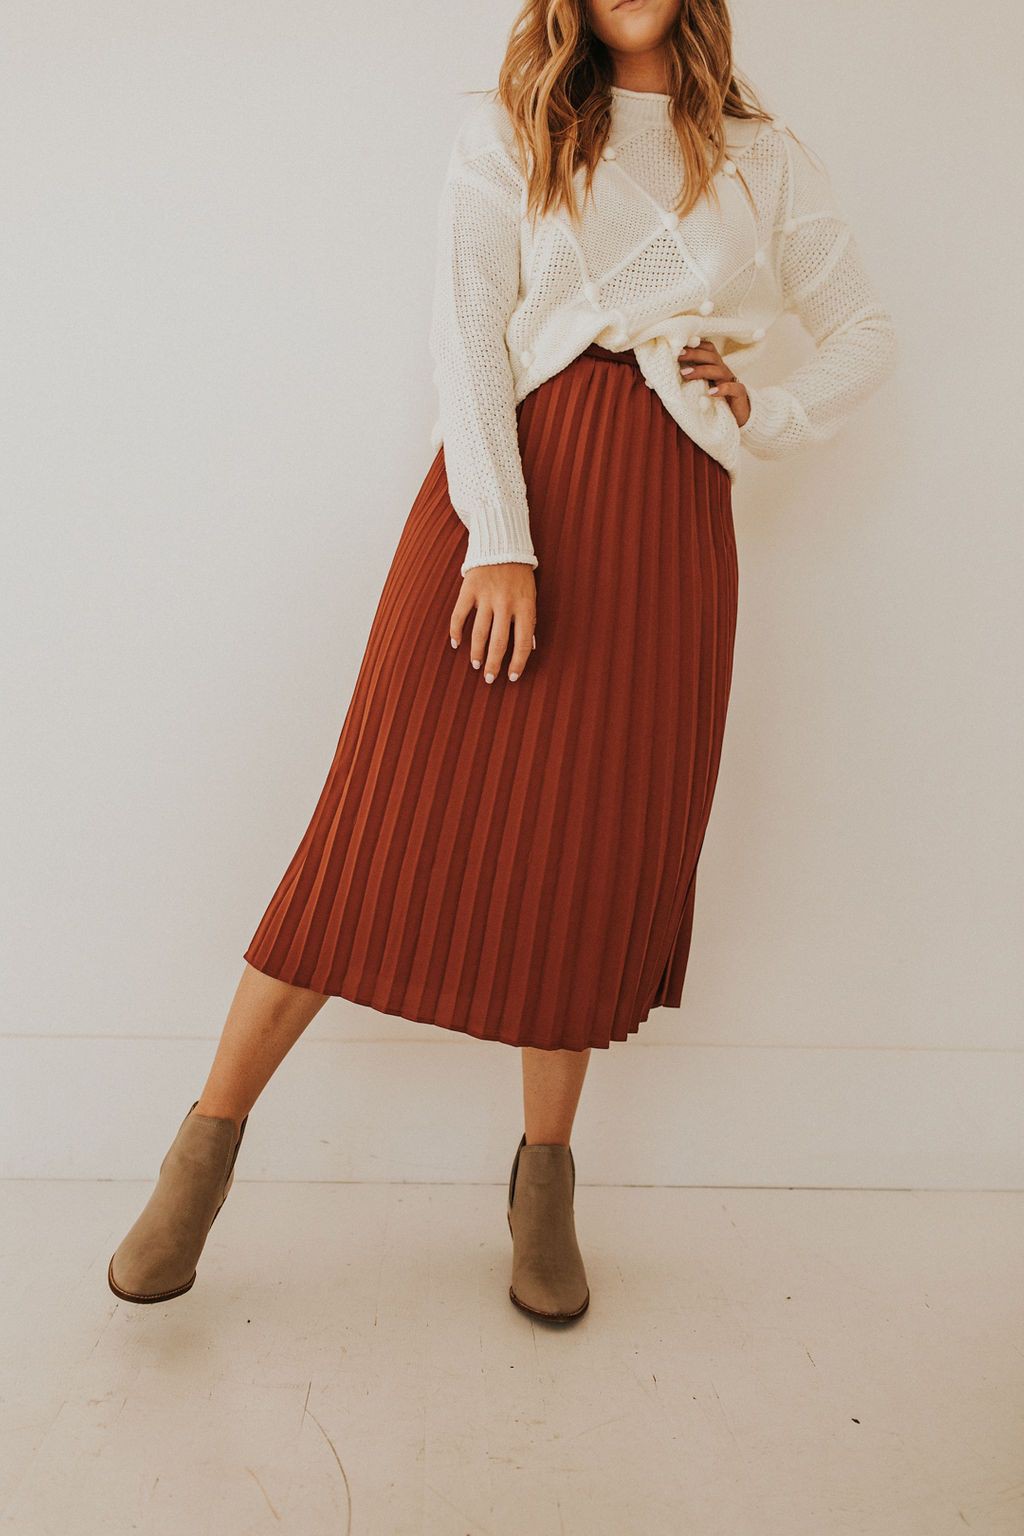 Outfit With Faldas plisadas, Moda modesta y Falda de mezclilla: Trajes De Falda,  Semana de la Moda,  Atuendos Informales,  Falda alta-baja,  Falda plisada  